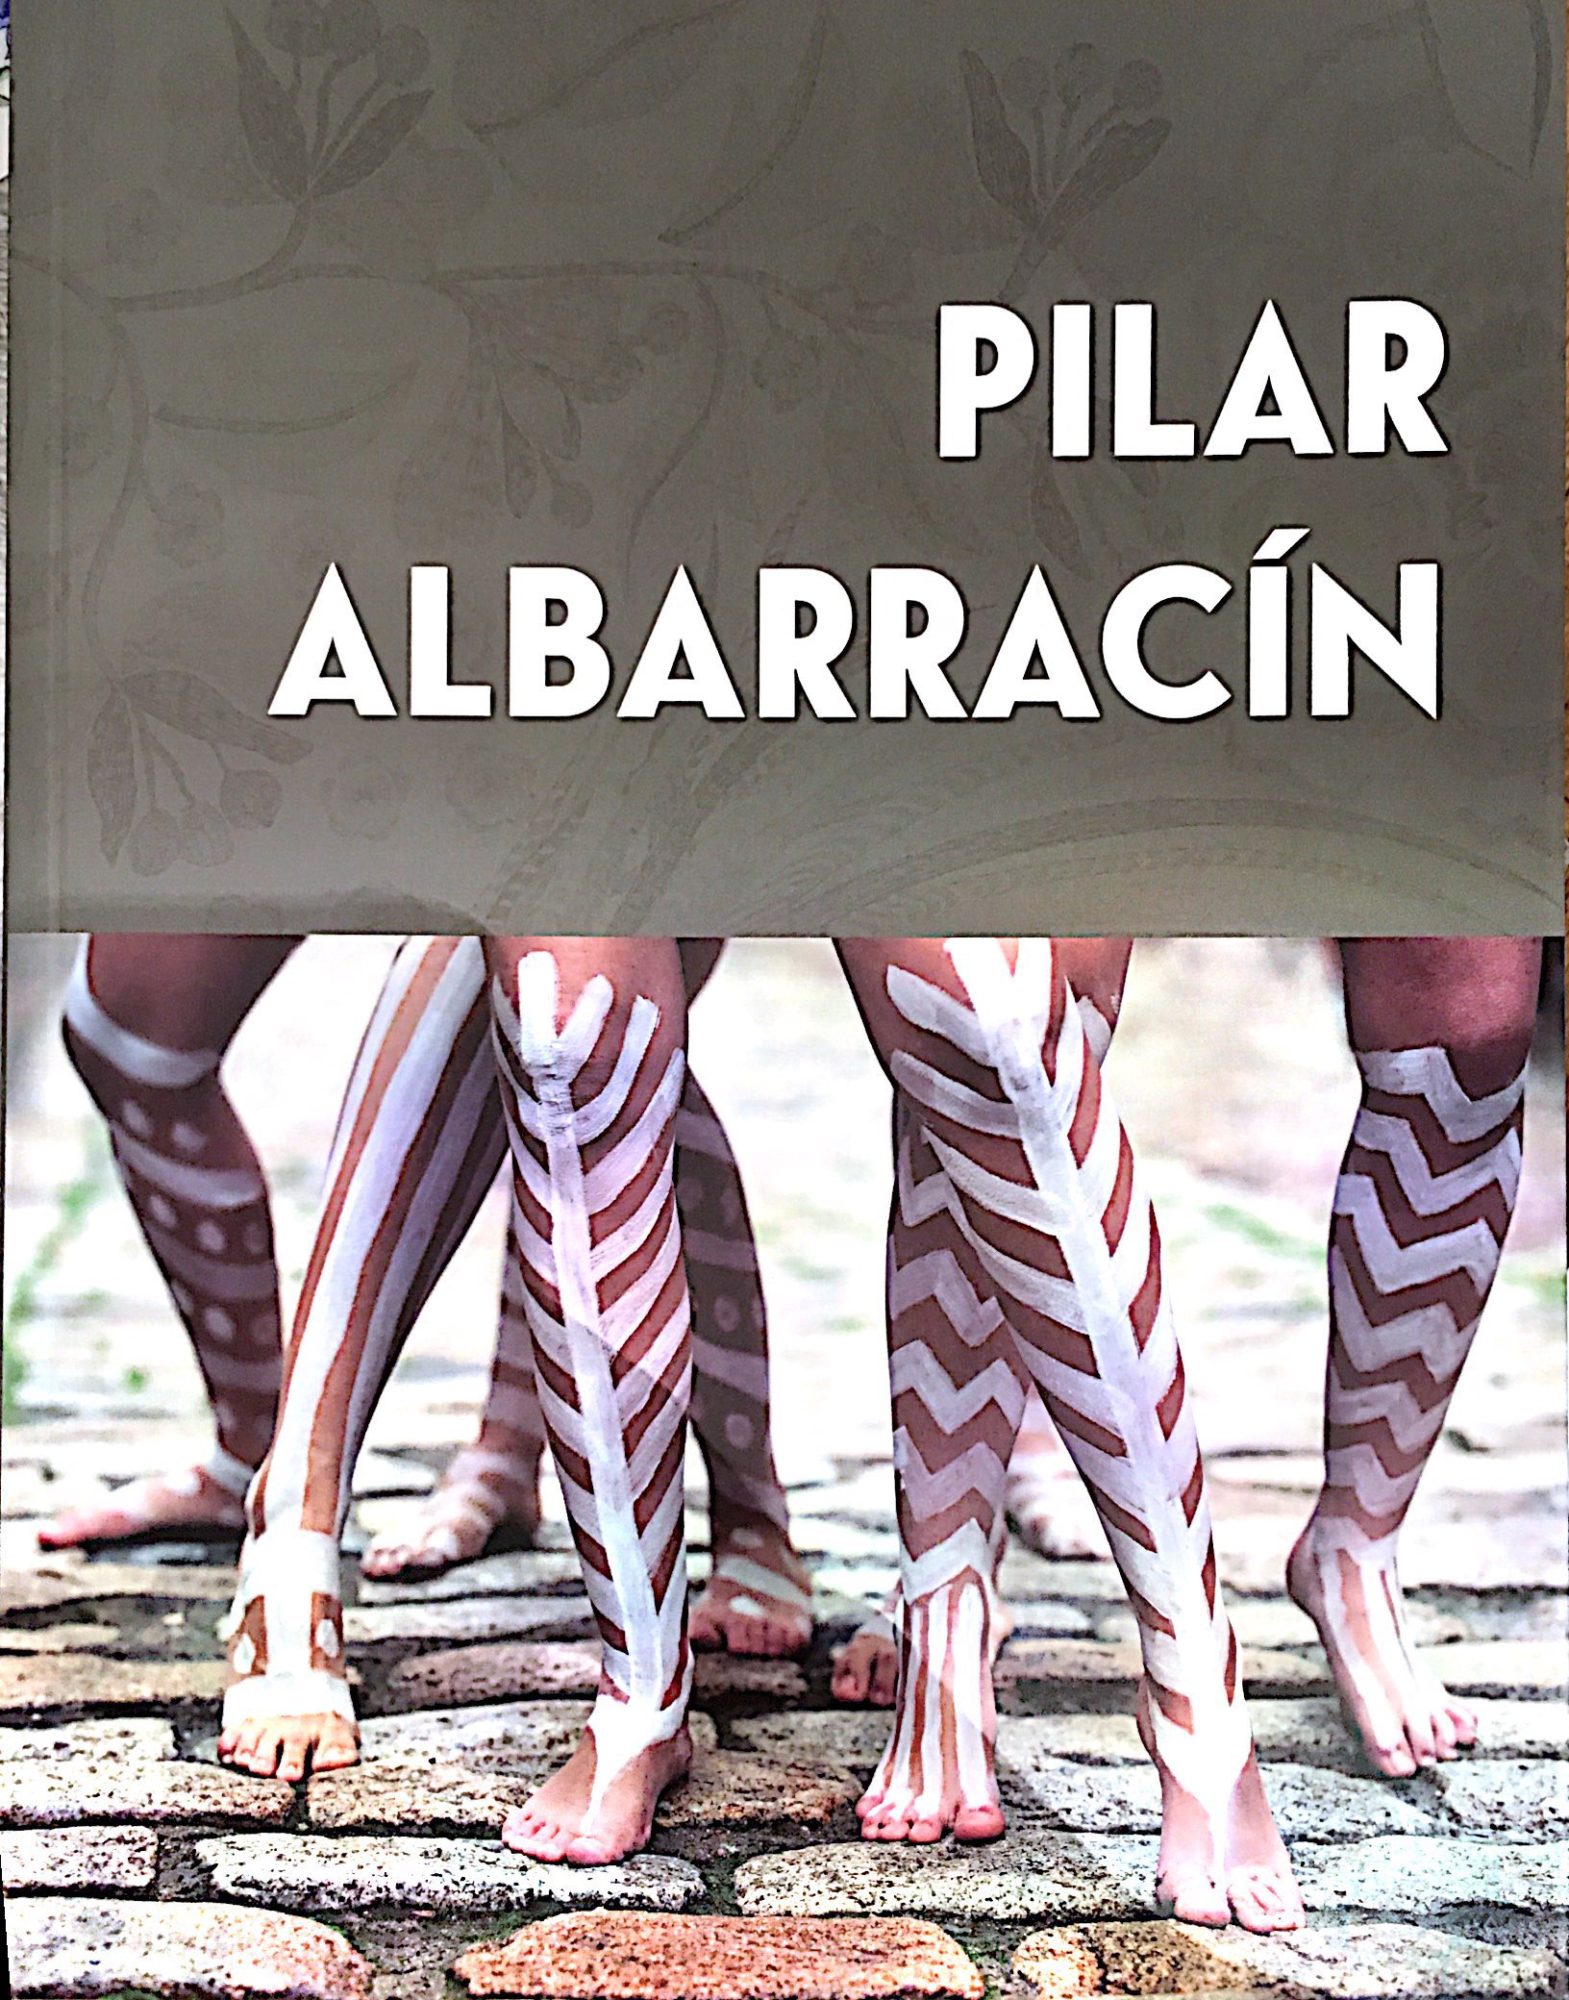 Pilar Albarracín - Galerie Georges-Philippe & Nathalie Vallois